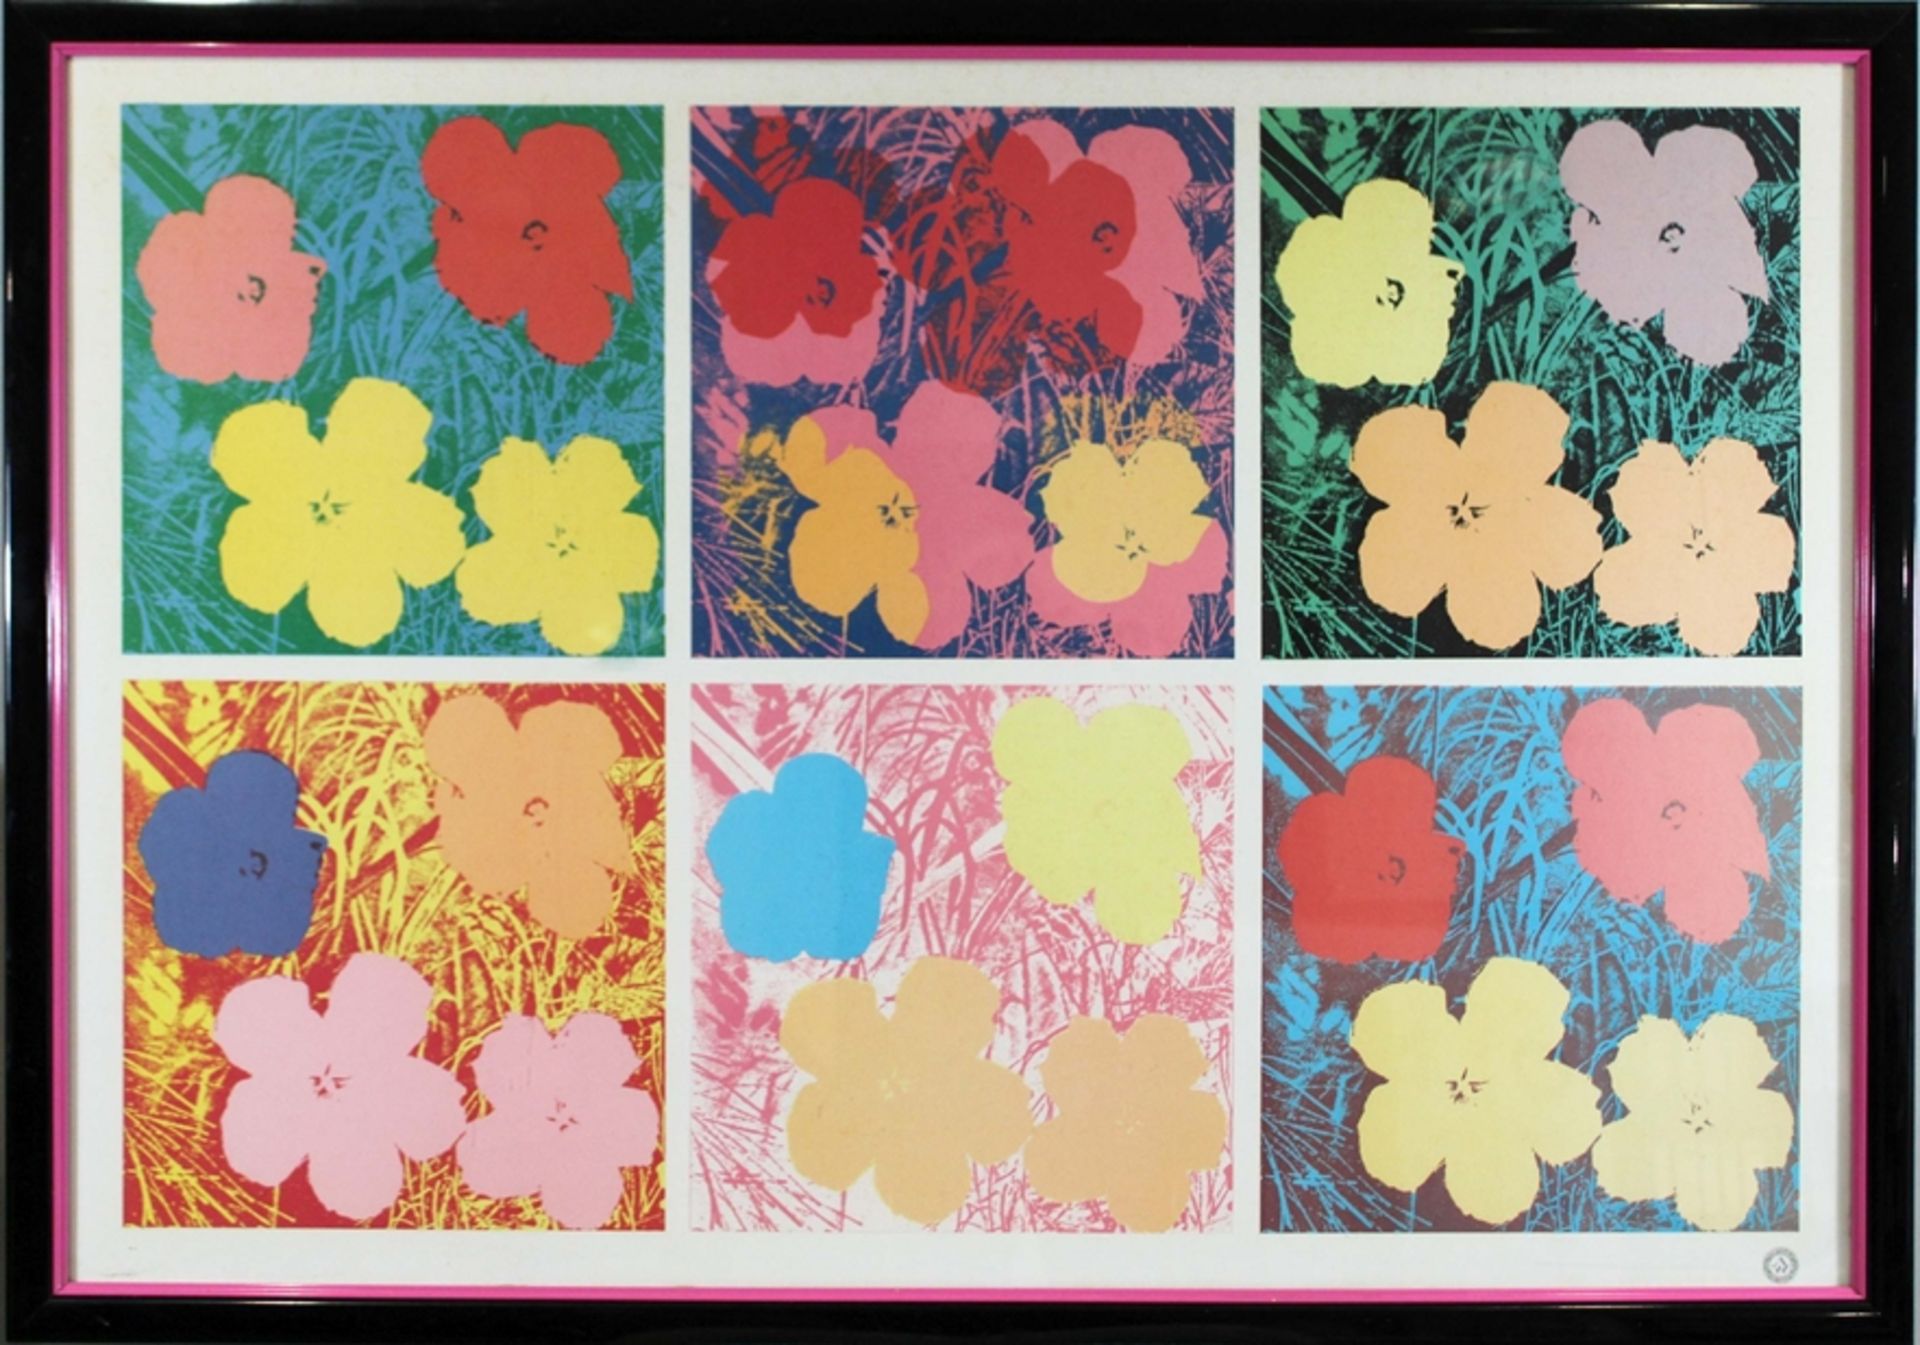 Andy Warhol (amerikanisch, 1928 - 1987), Poster Flower, Lithographie, 1989, Lichtmaß: 77 x 114 cm, - Bild 2 aus 3